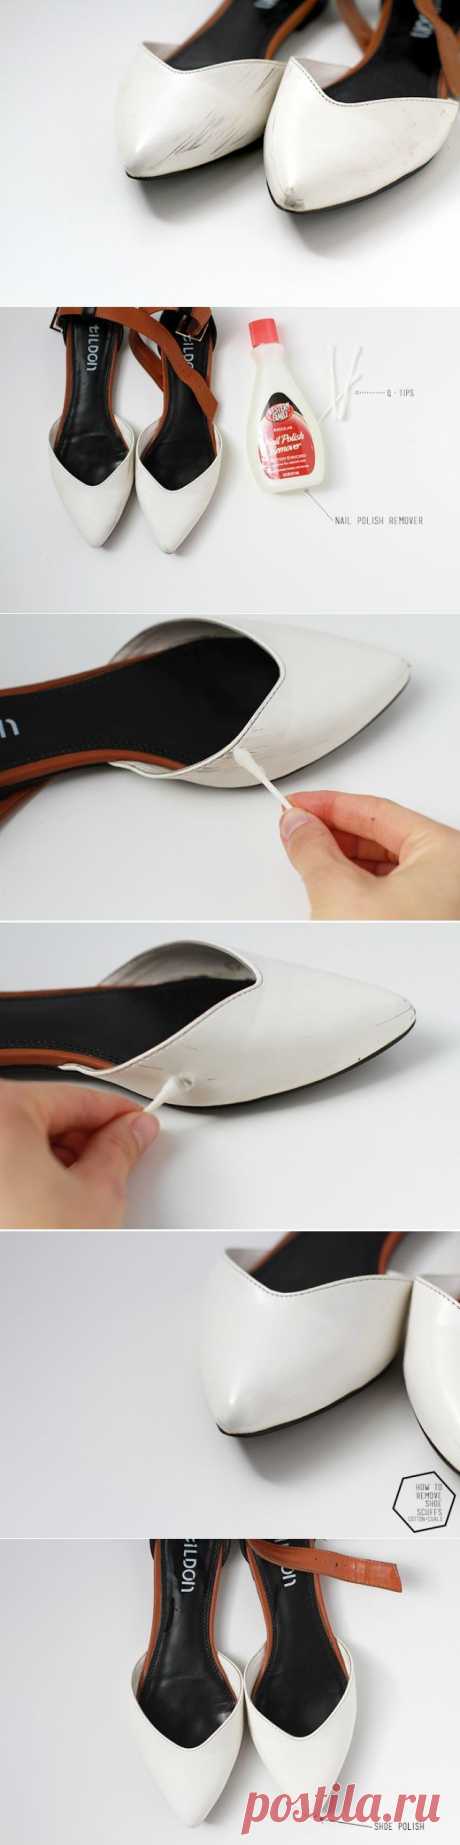 Как убрать царапины на обуви (Diy) / Обувь /